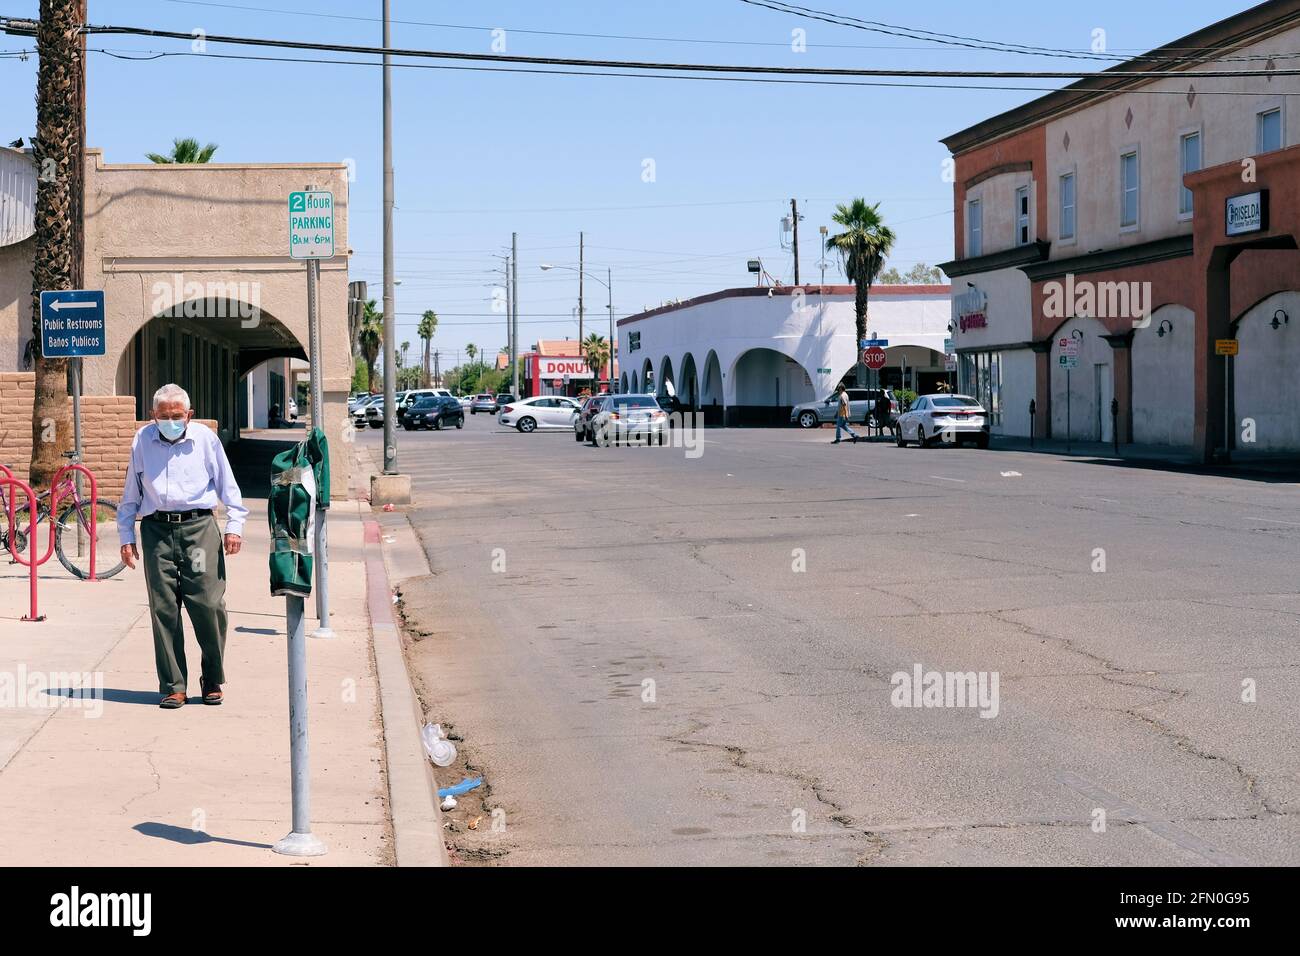 Maskierter alter Mann, der während der Pandemie von Covid-19 allein auf einem Bürgersteig in einem nahe leeren Stadtzentrum von Calexico, Kalifornien, ging; älterer Herr ganz allein. Stockfoto